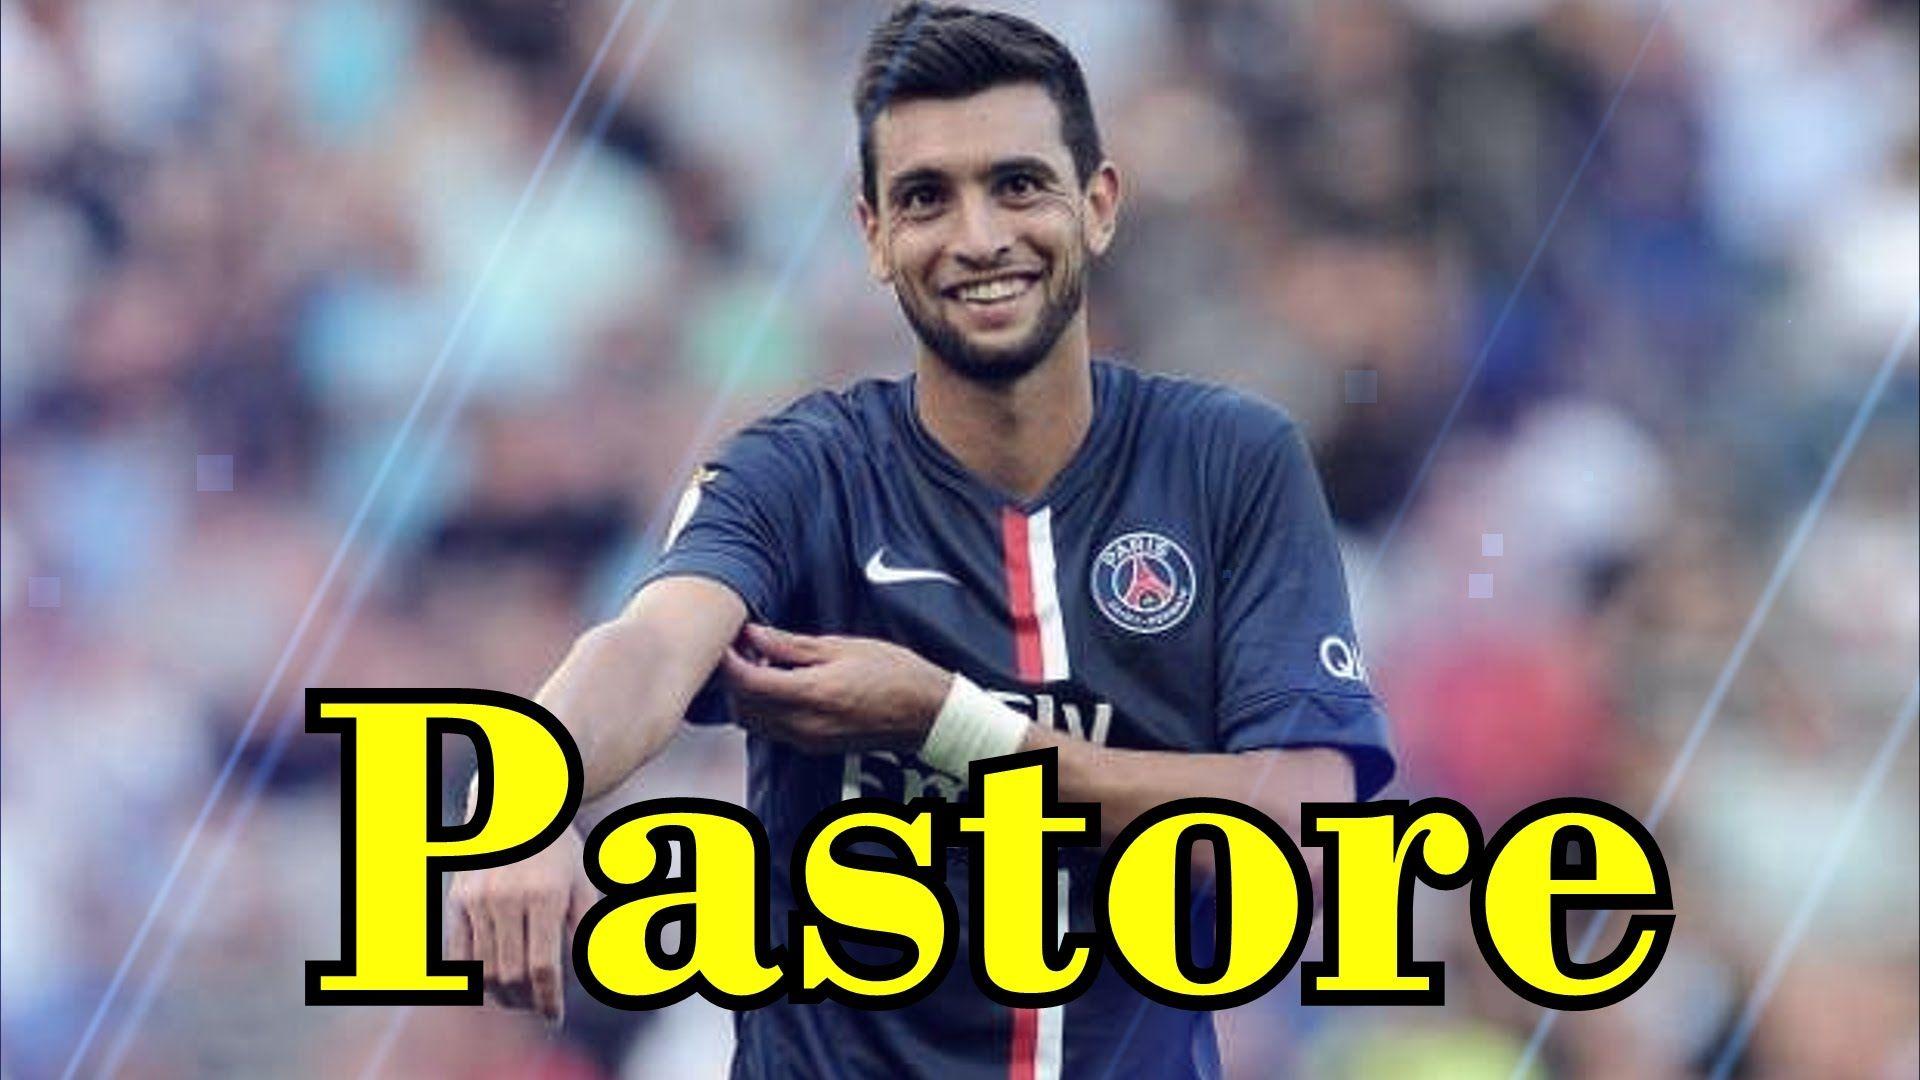 Javier Pastore Skills and Goals